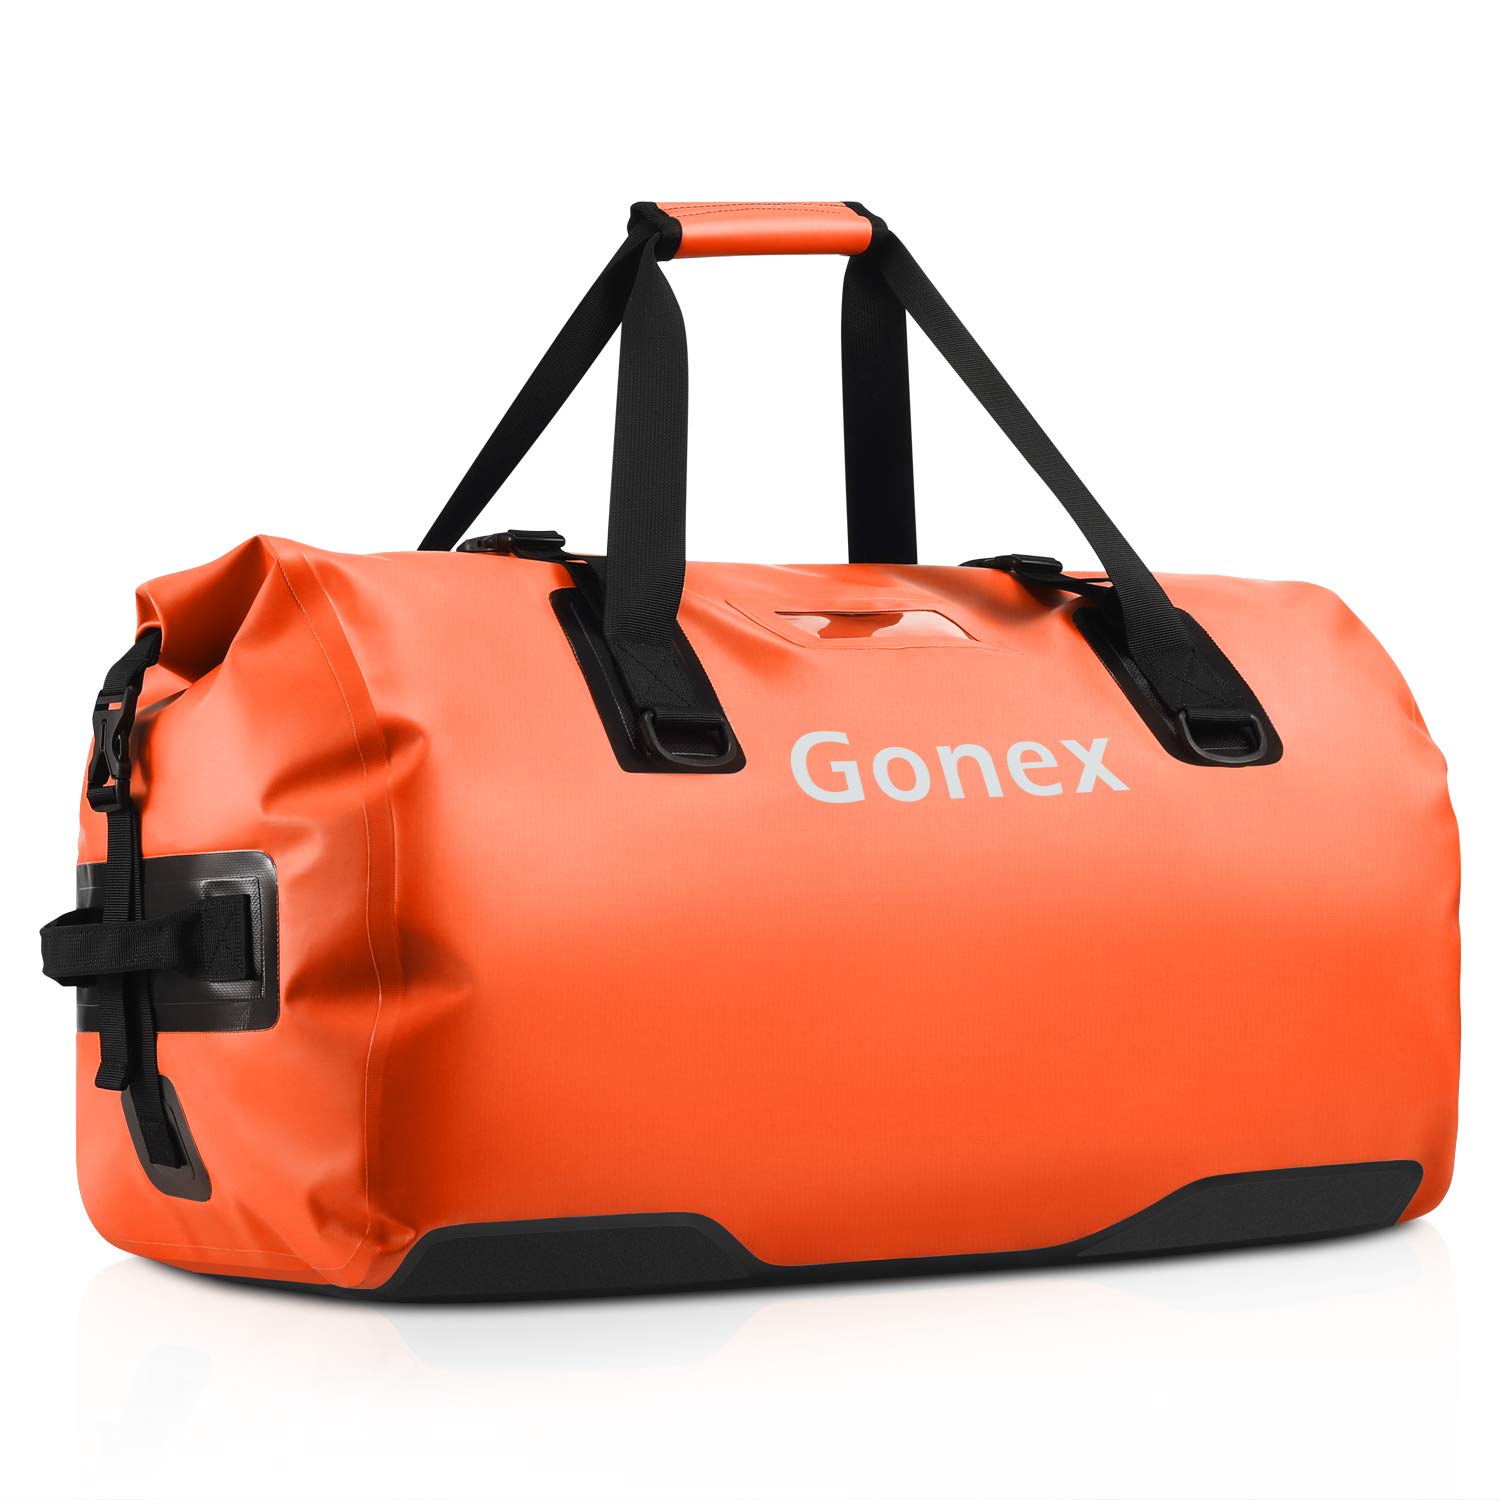 Pre-owned No More Dropsgrail!! Orange Duffle Bag 35!!!